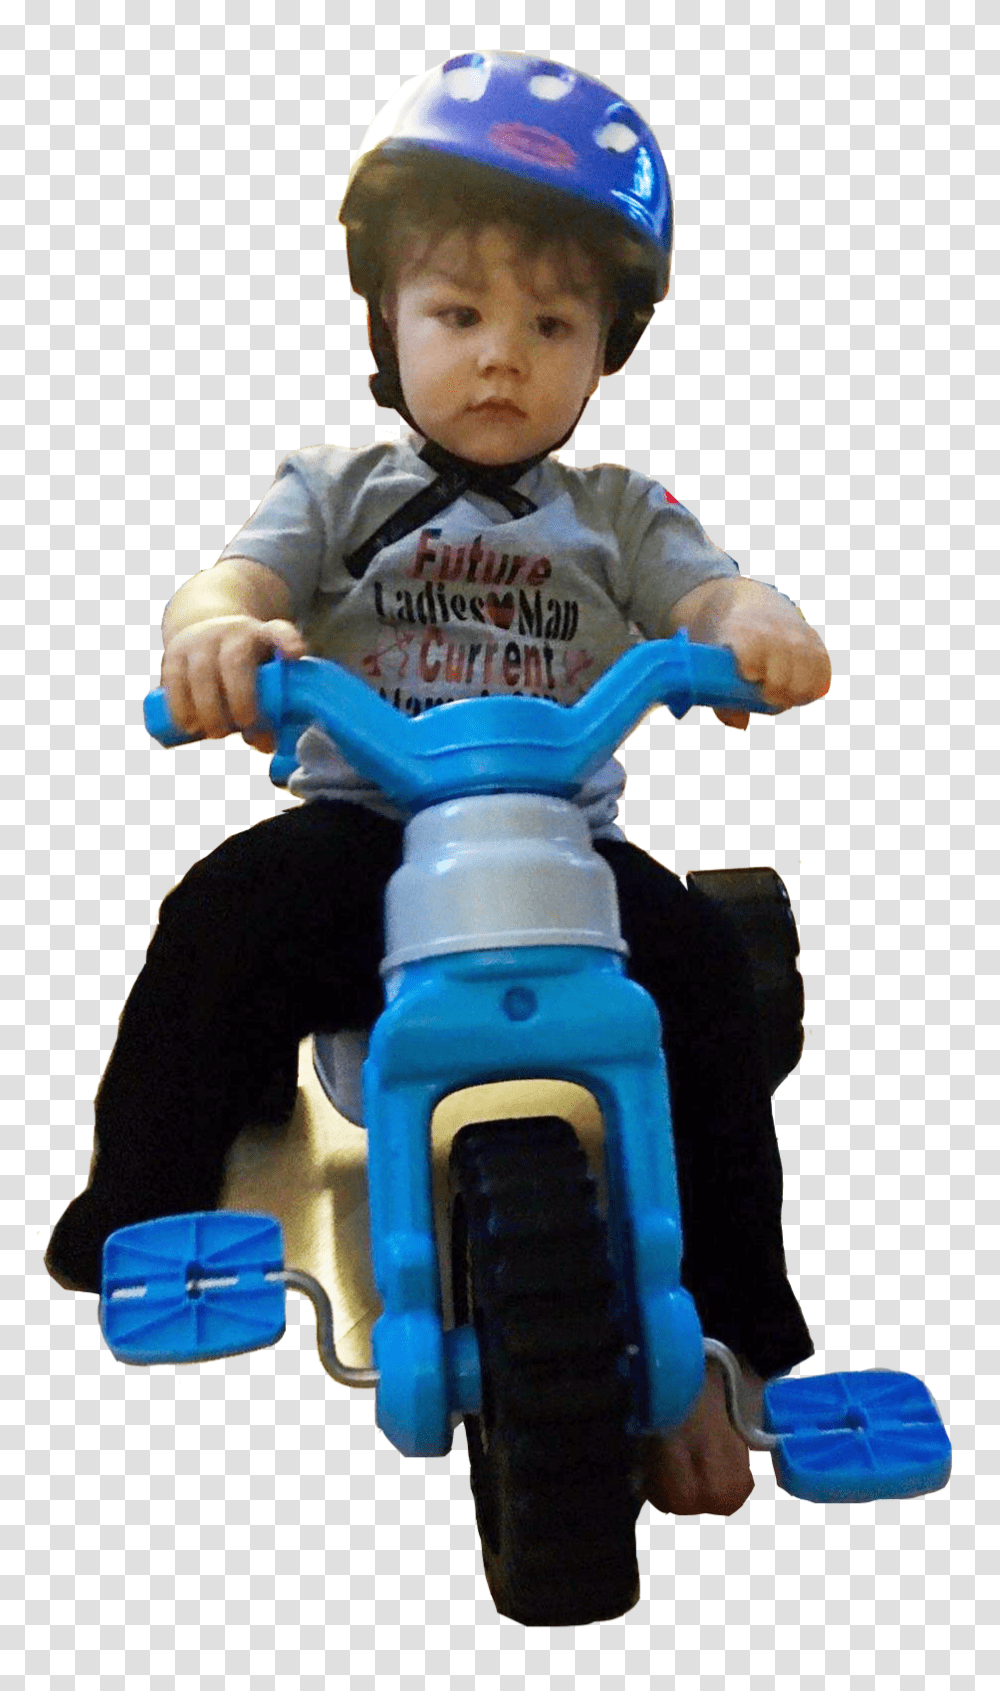 Keeping Your Toddler Safe, Toy, Helmet, Apparel Transparent Png